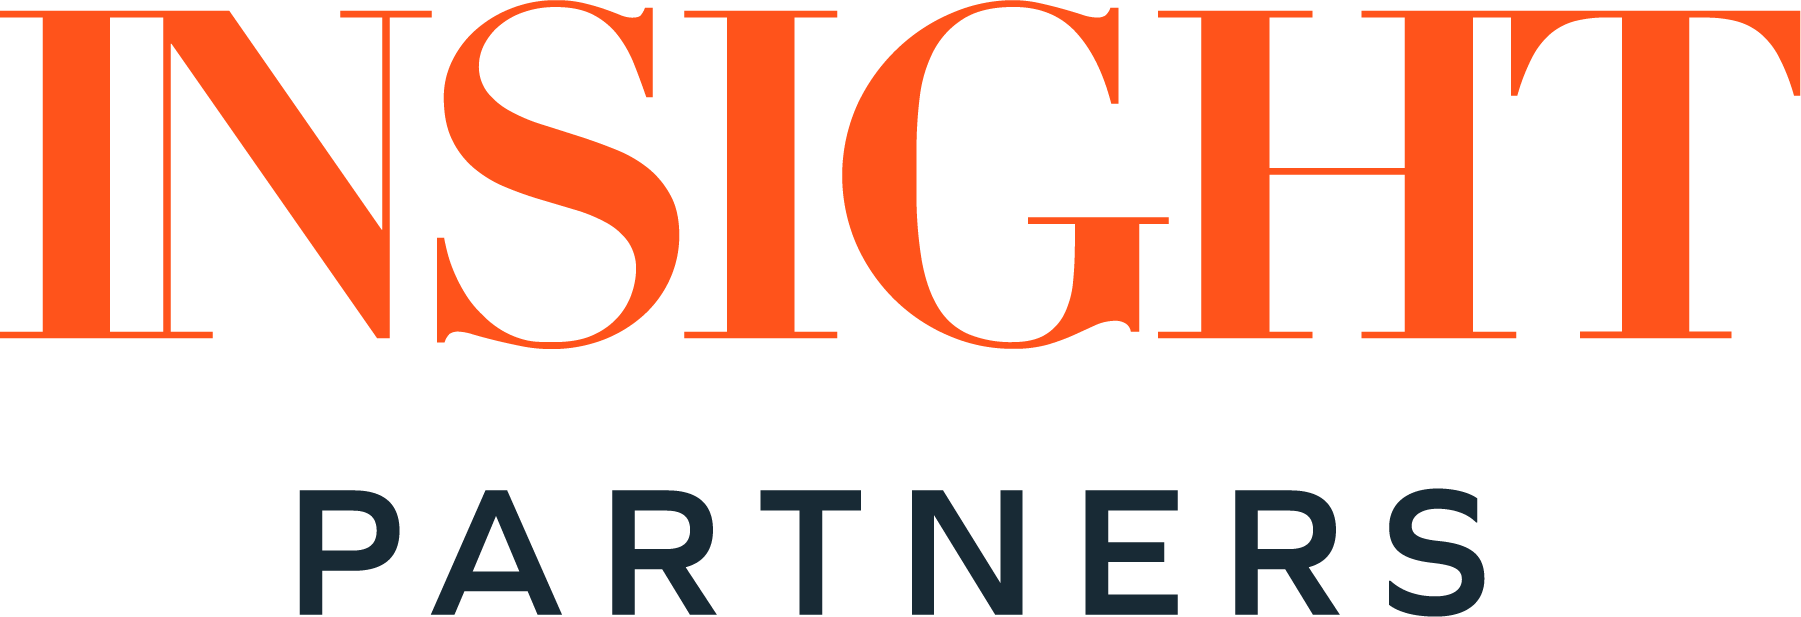 Insight_Partners_logo